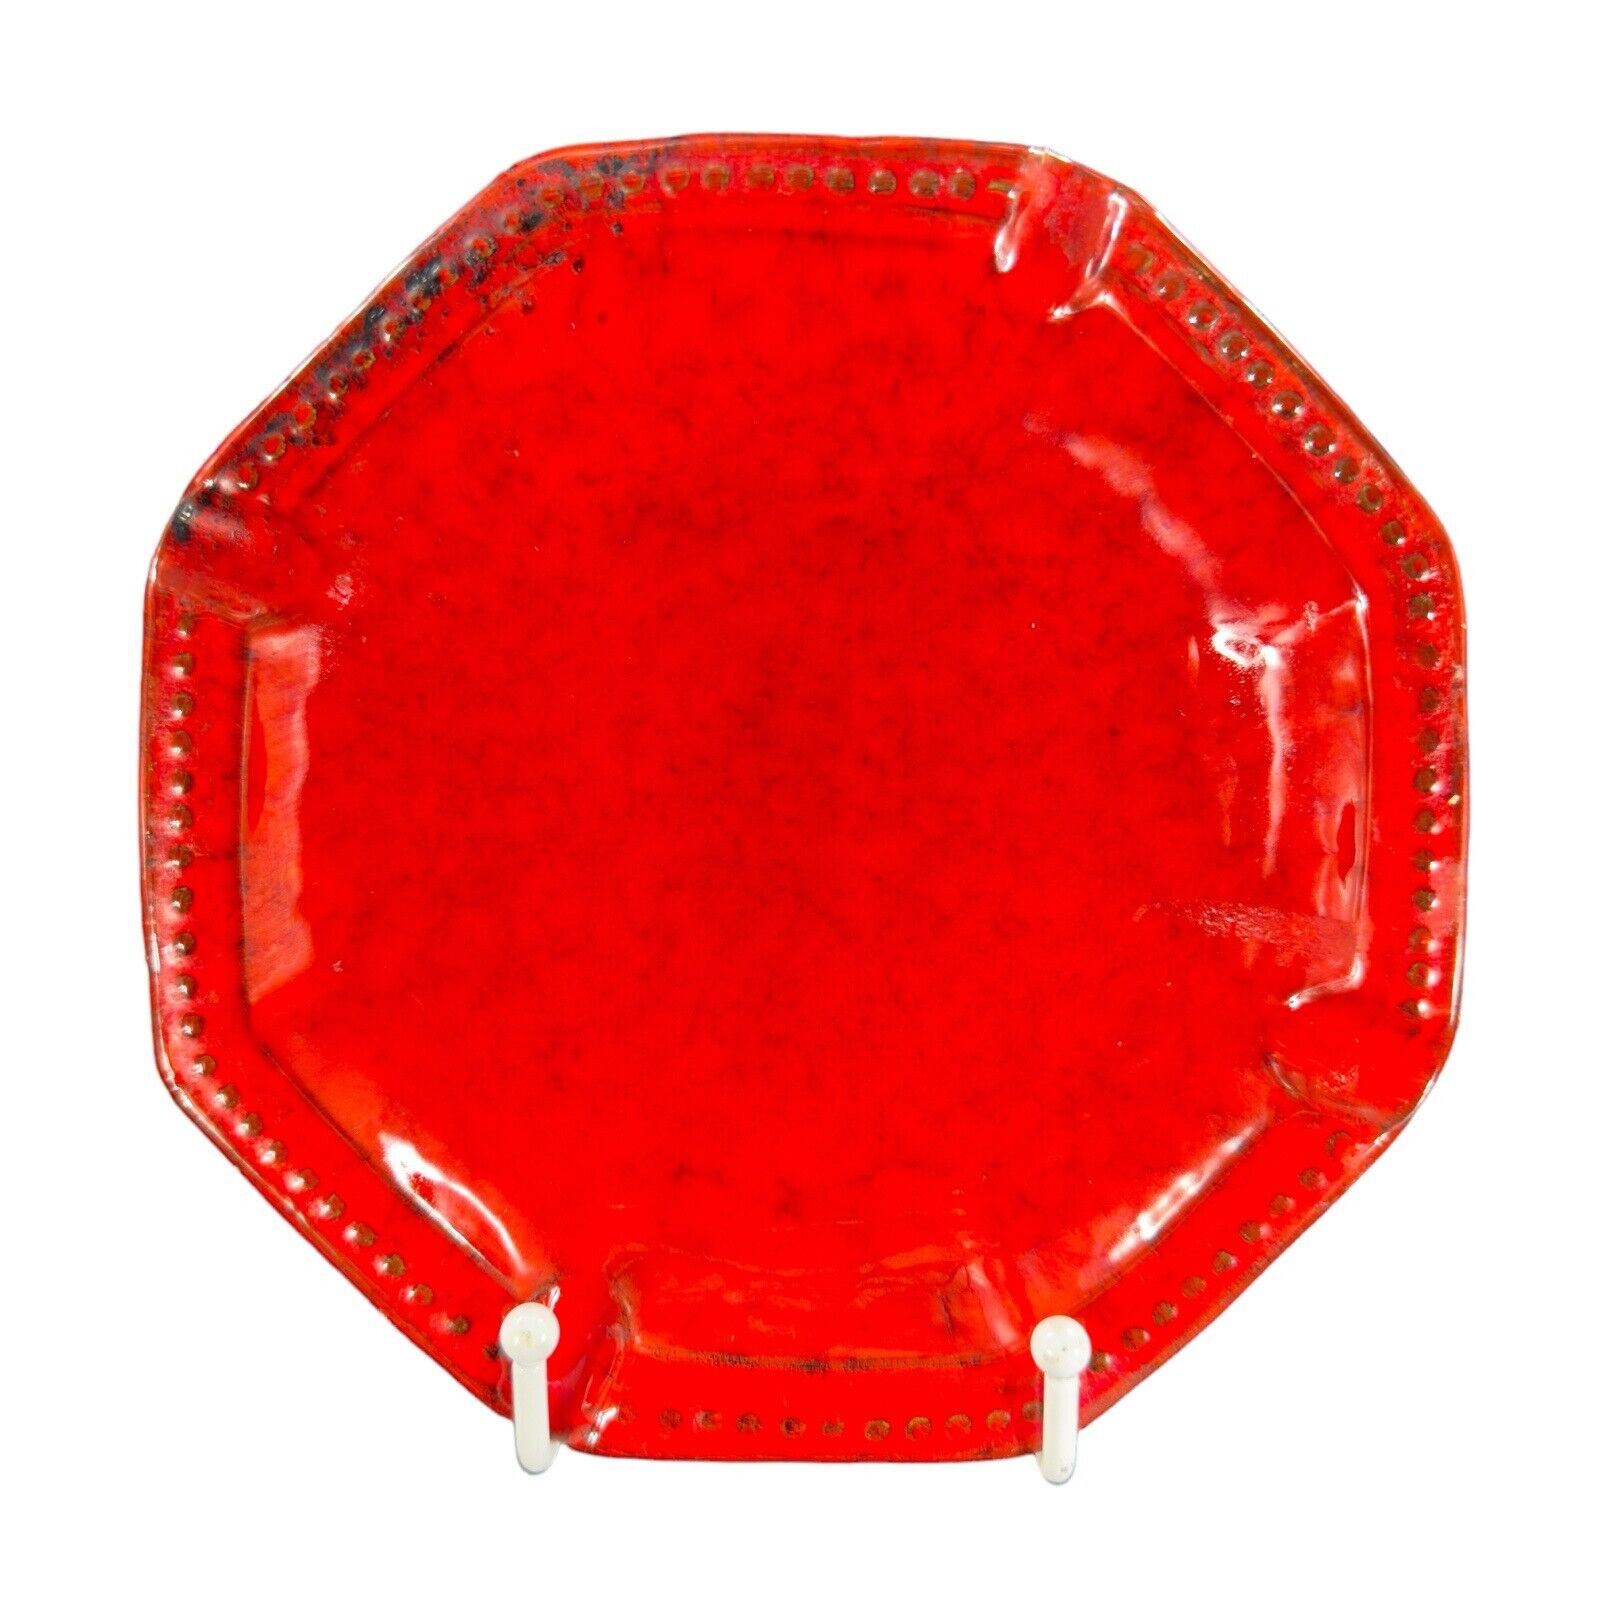 Mid Century Italian Art Pottery Tray Dish Bright Red Glaze Marked Italy Vintage